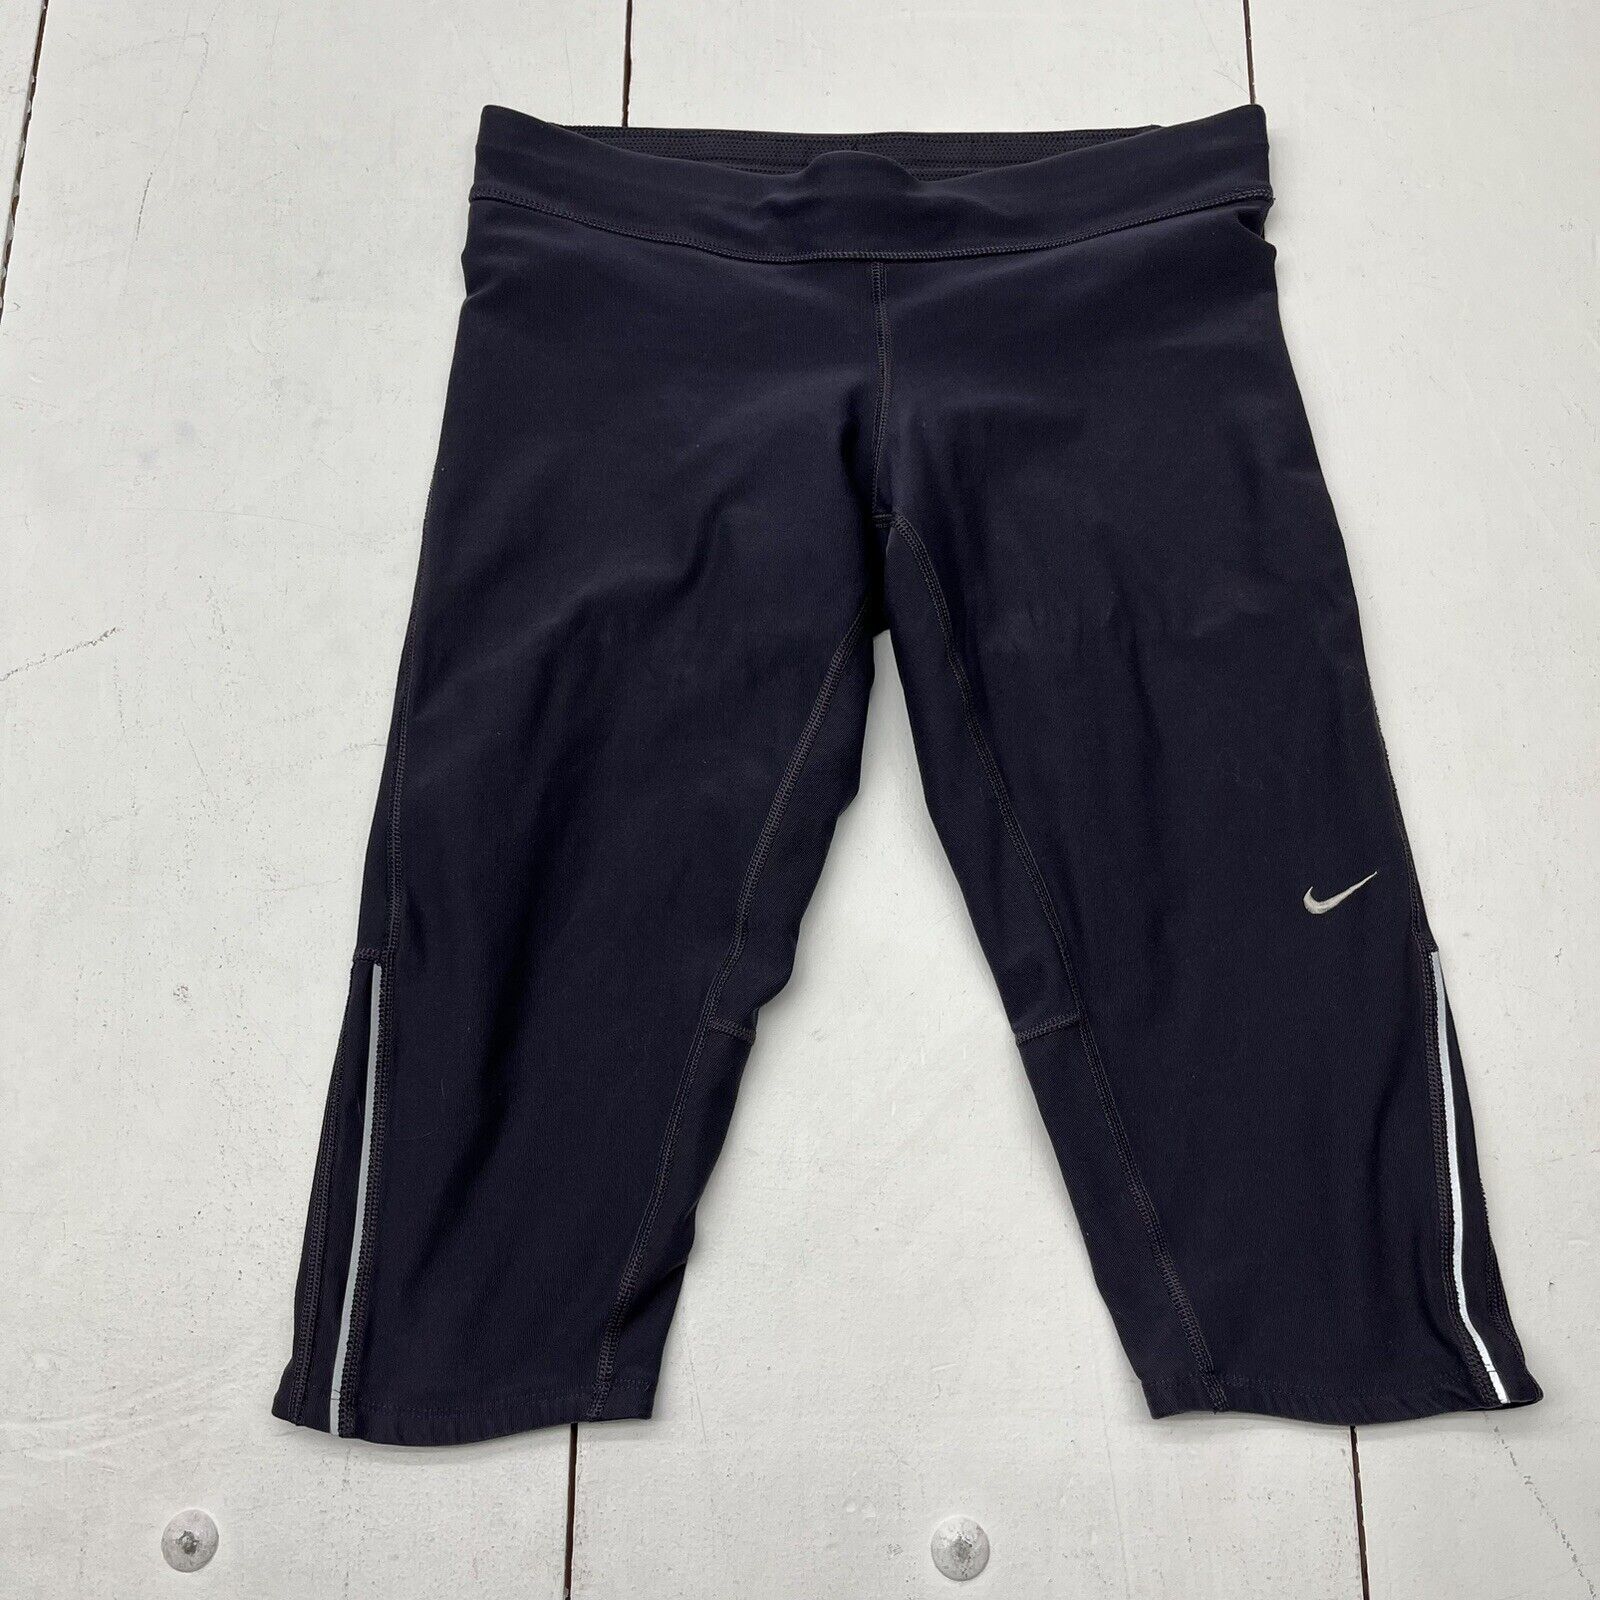 Nike Dri-Fit Navy Blue Capri Leggings W/ Drawstring Back Swoosh